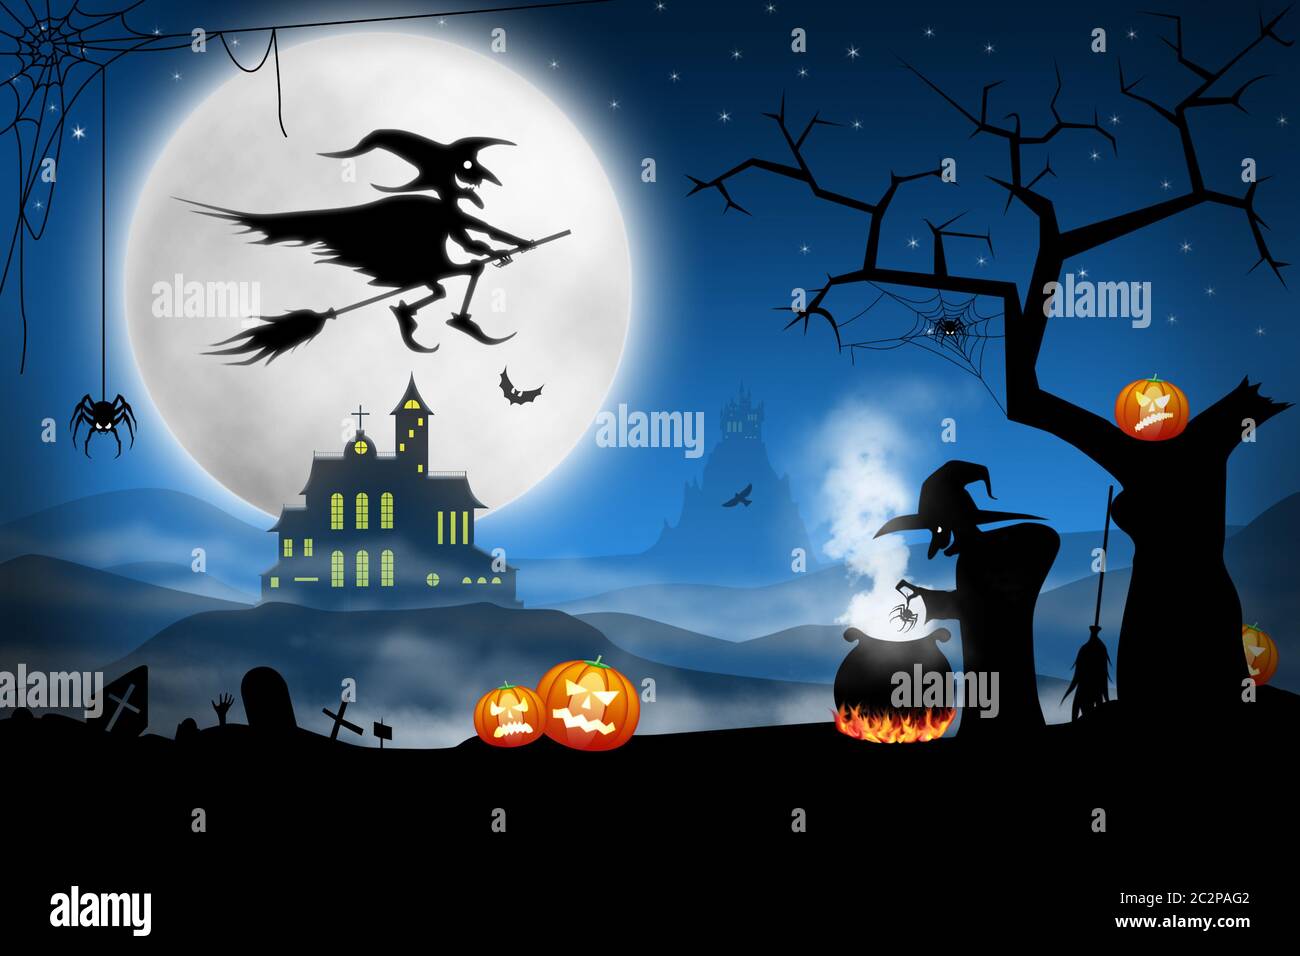 Spooky Halloween nuit. La cuisson de la soupe des sorcières bat le cimetière brumeux Banque D'Images